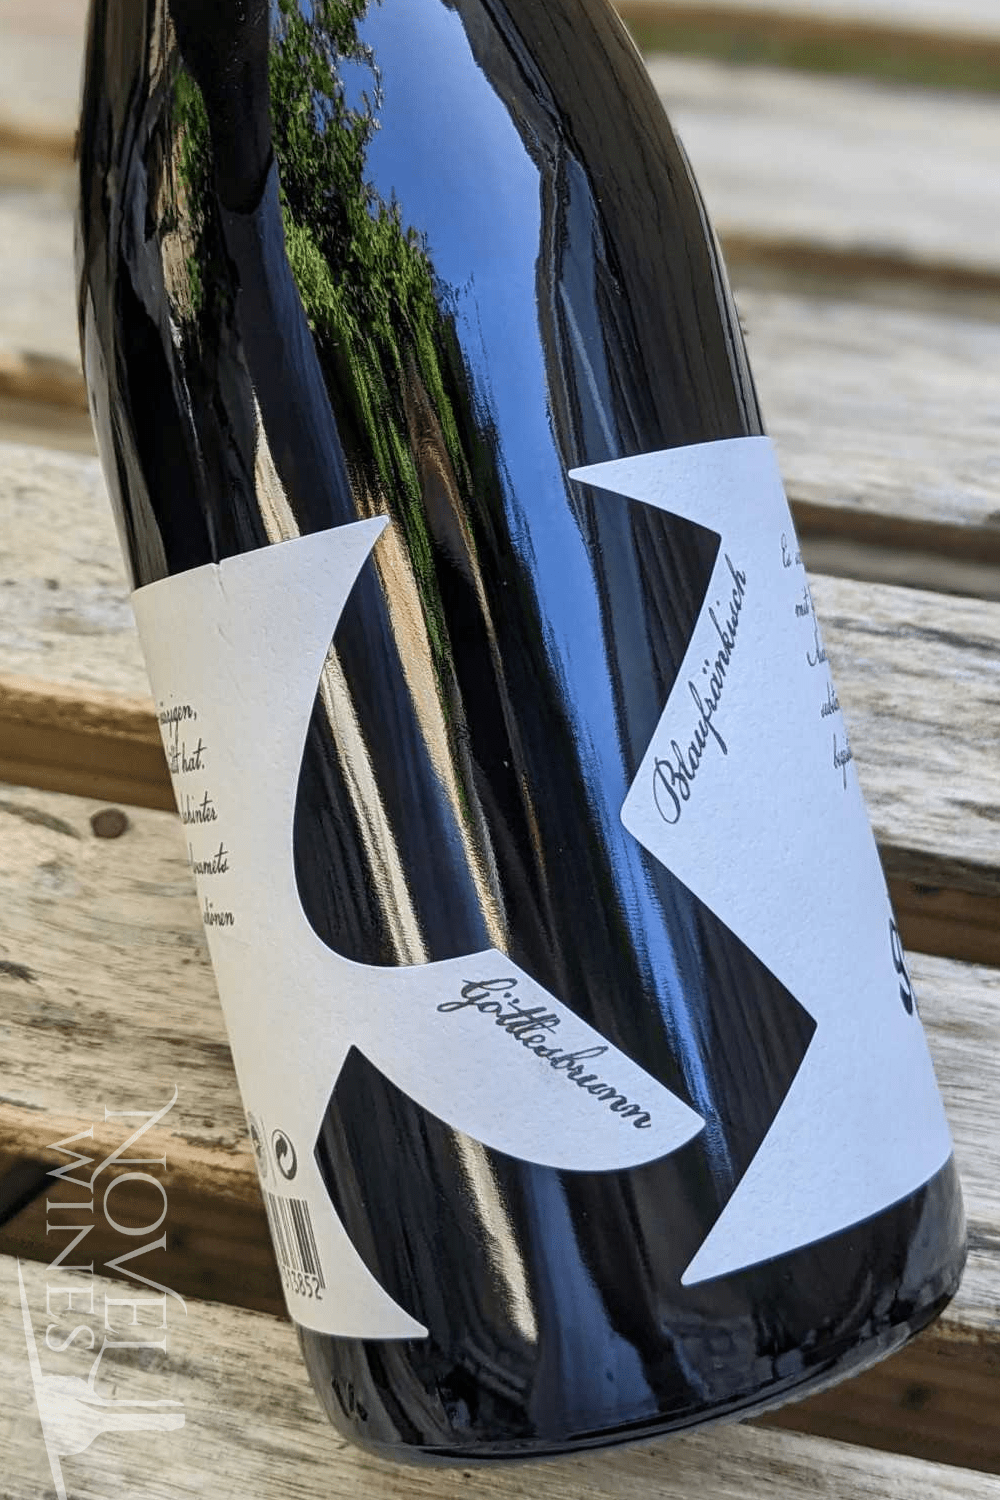 Glatzer Red Wine Walter Glatzer Organic Blaufränkisch Göttlesbrunn SV Carnuntum DAC 2019, Austria